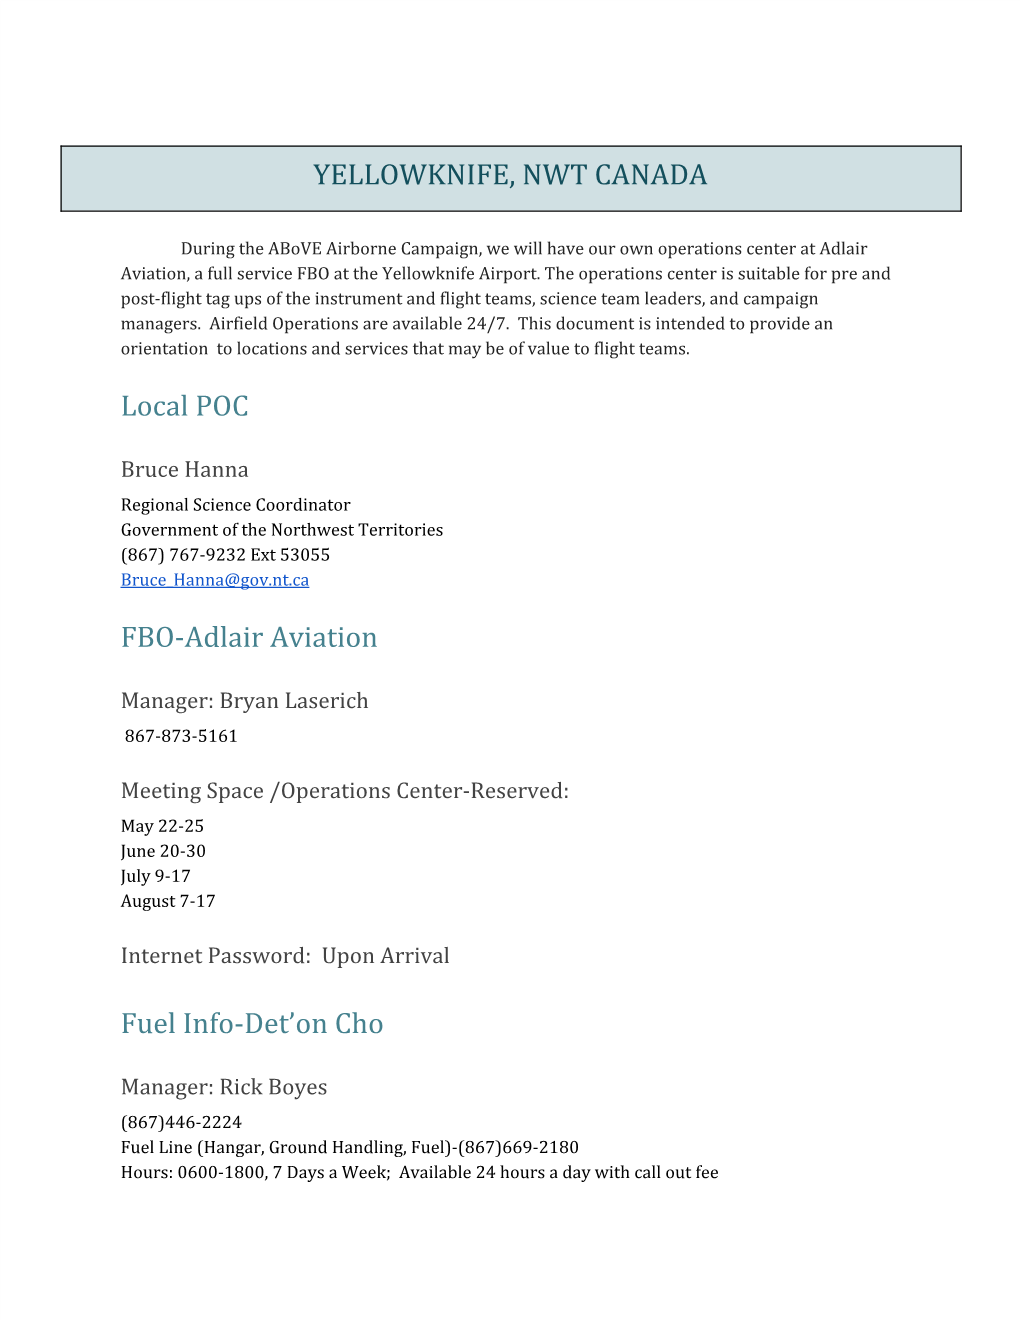 YELLOWKNIFE, NWT CANADA Local POC FBO-Adlair Aviation Fuel Info